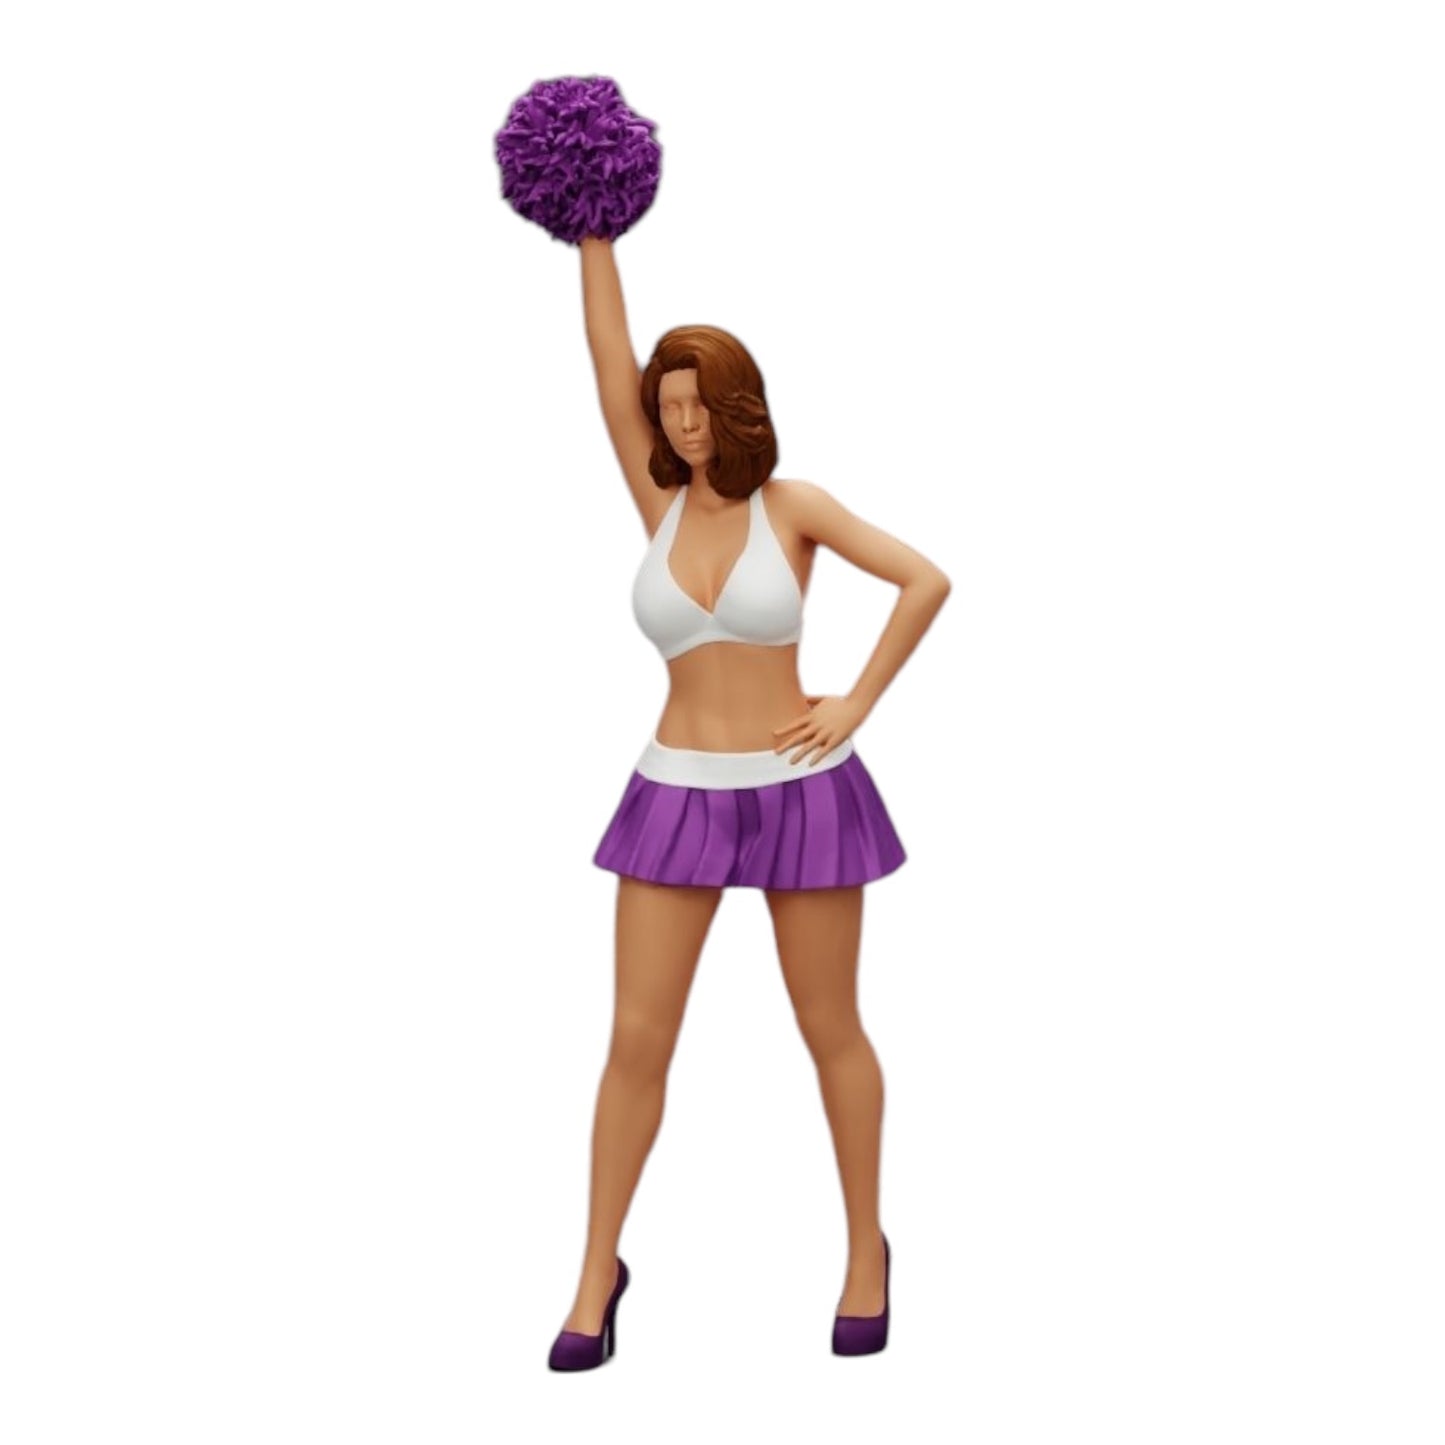 Diorama Modellbau Produktfoto 0: Junges Mädchen/ Cheerleader mit Pompons beim Anfeuern (Ref Nr. A3)